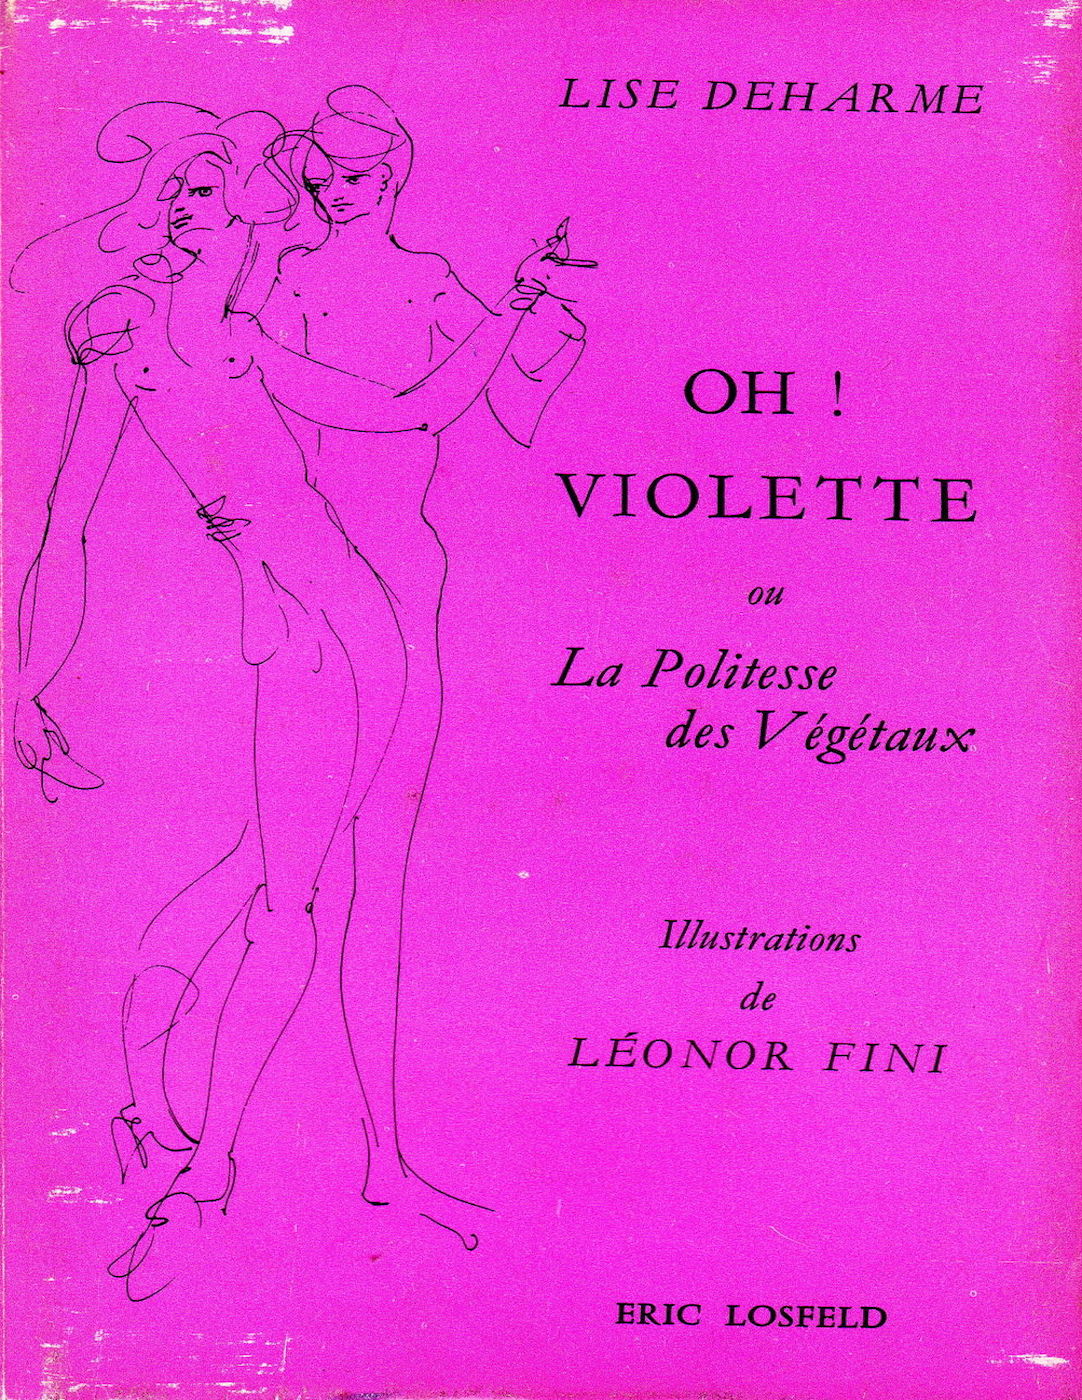 Lise Deharme, <br /><em>Oh ! Violette ou la Politesse des végétaux</em>, 1969